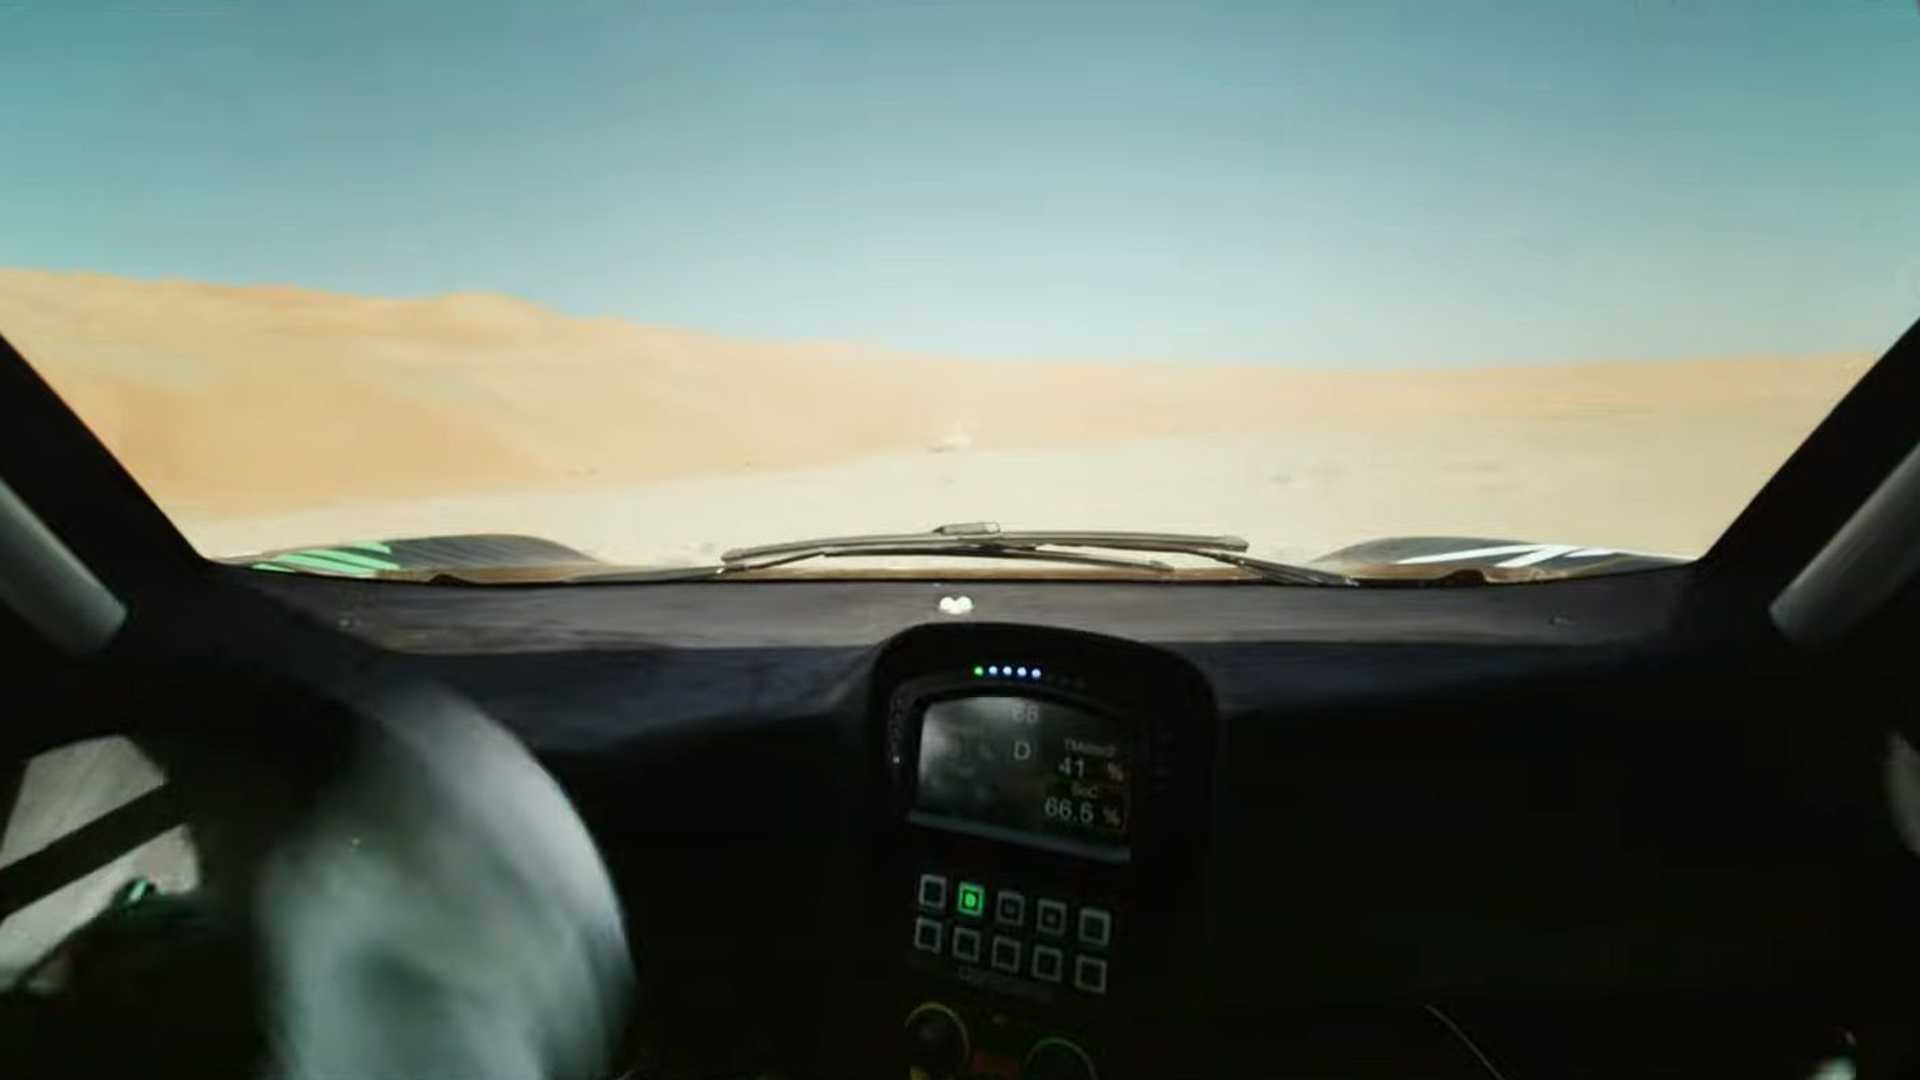 بي ام دبليو الشرق الأوسط تكشف عن سيارة Dune Taxi الجديدة للراليات 18